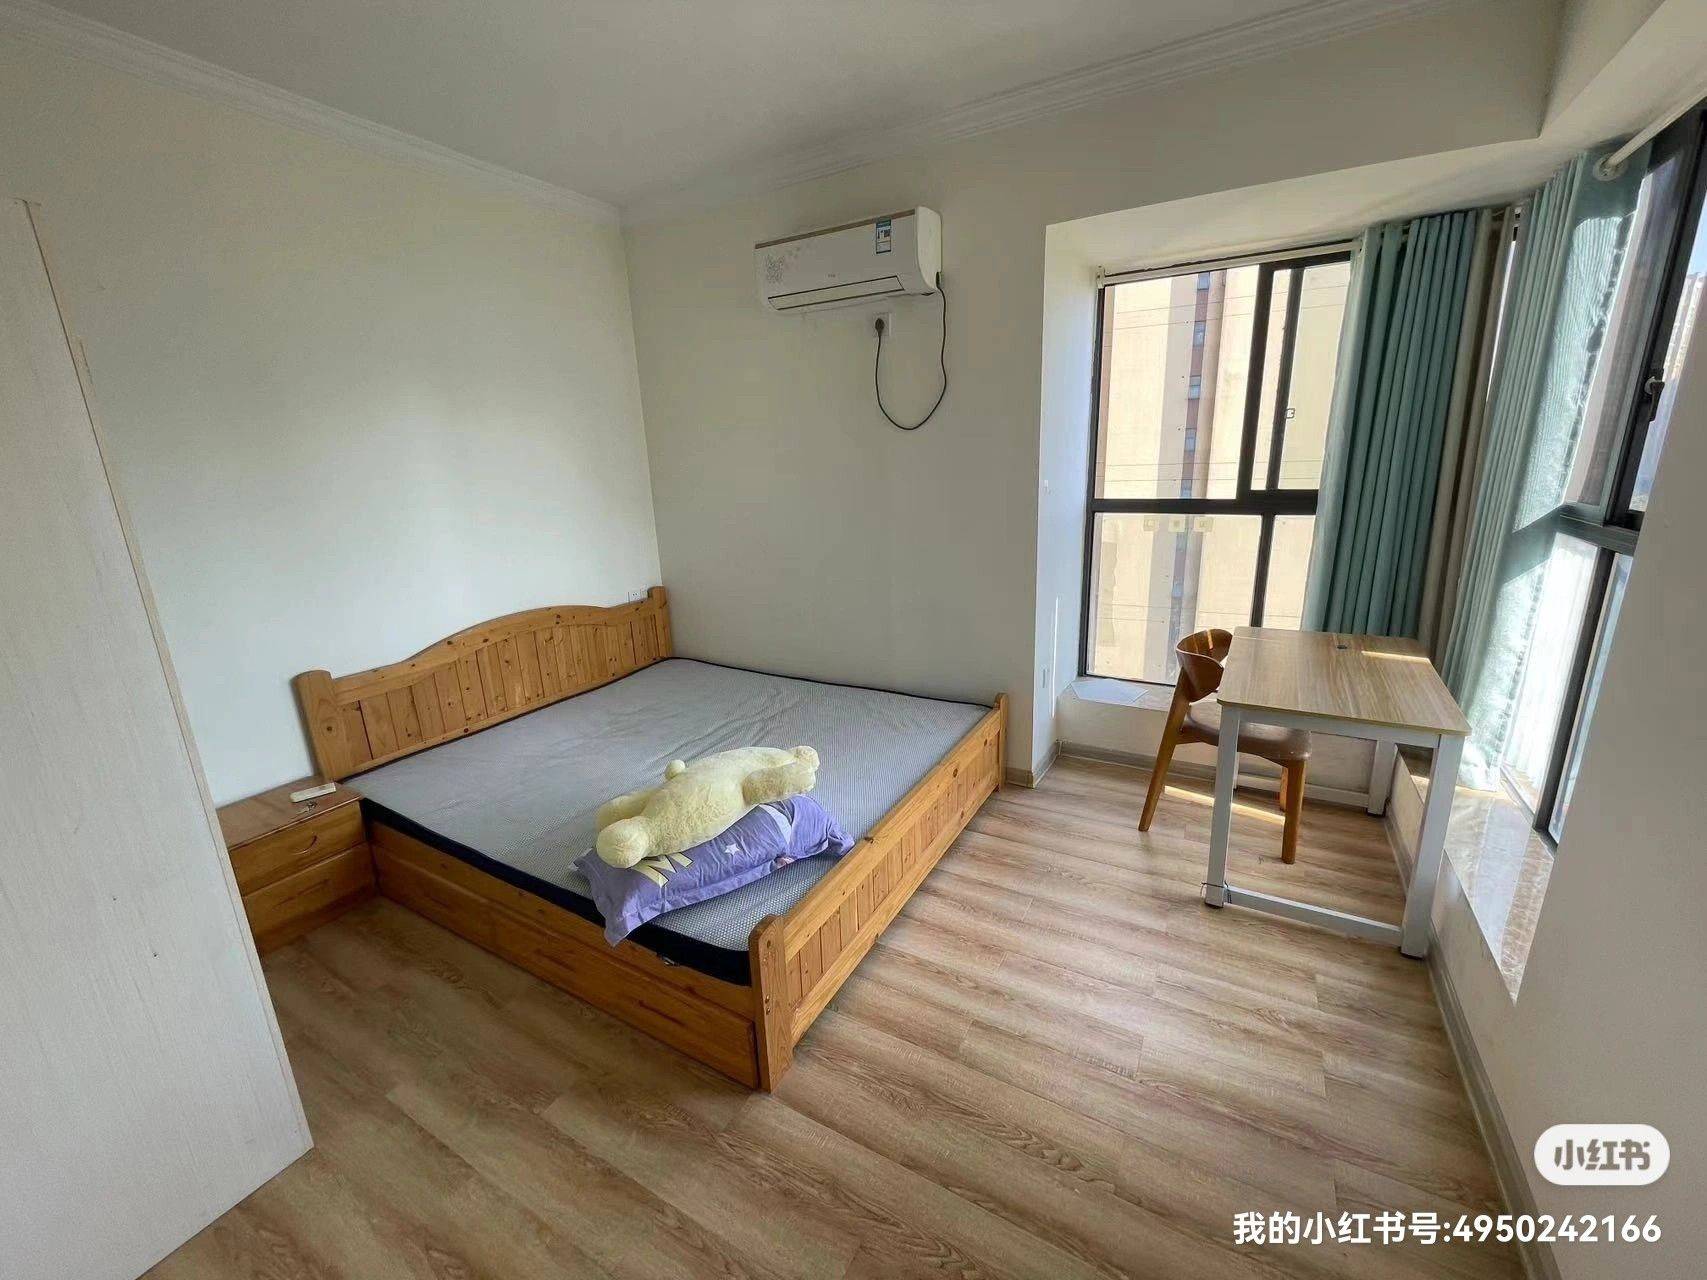 Changsha-Yuelu-Cozy Home,Clean&Comfy,“Friends”,LGBTQ Friendly